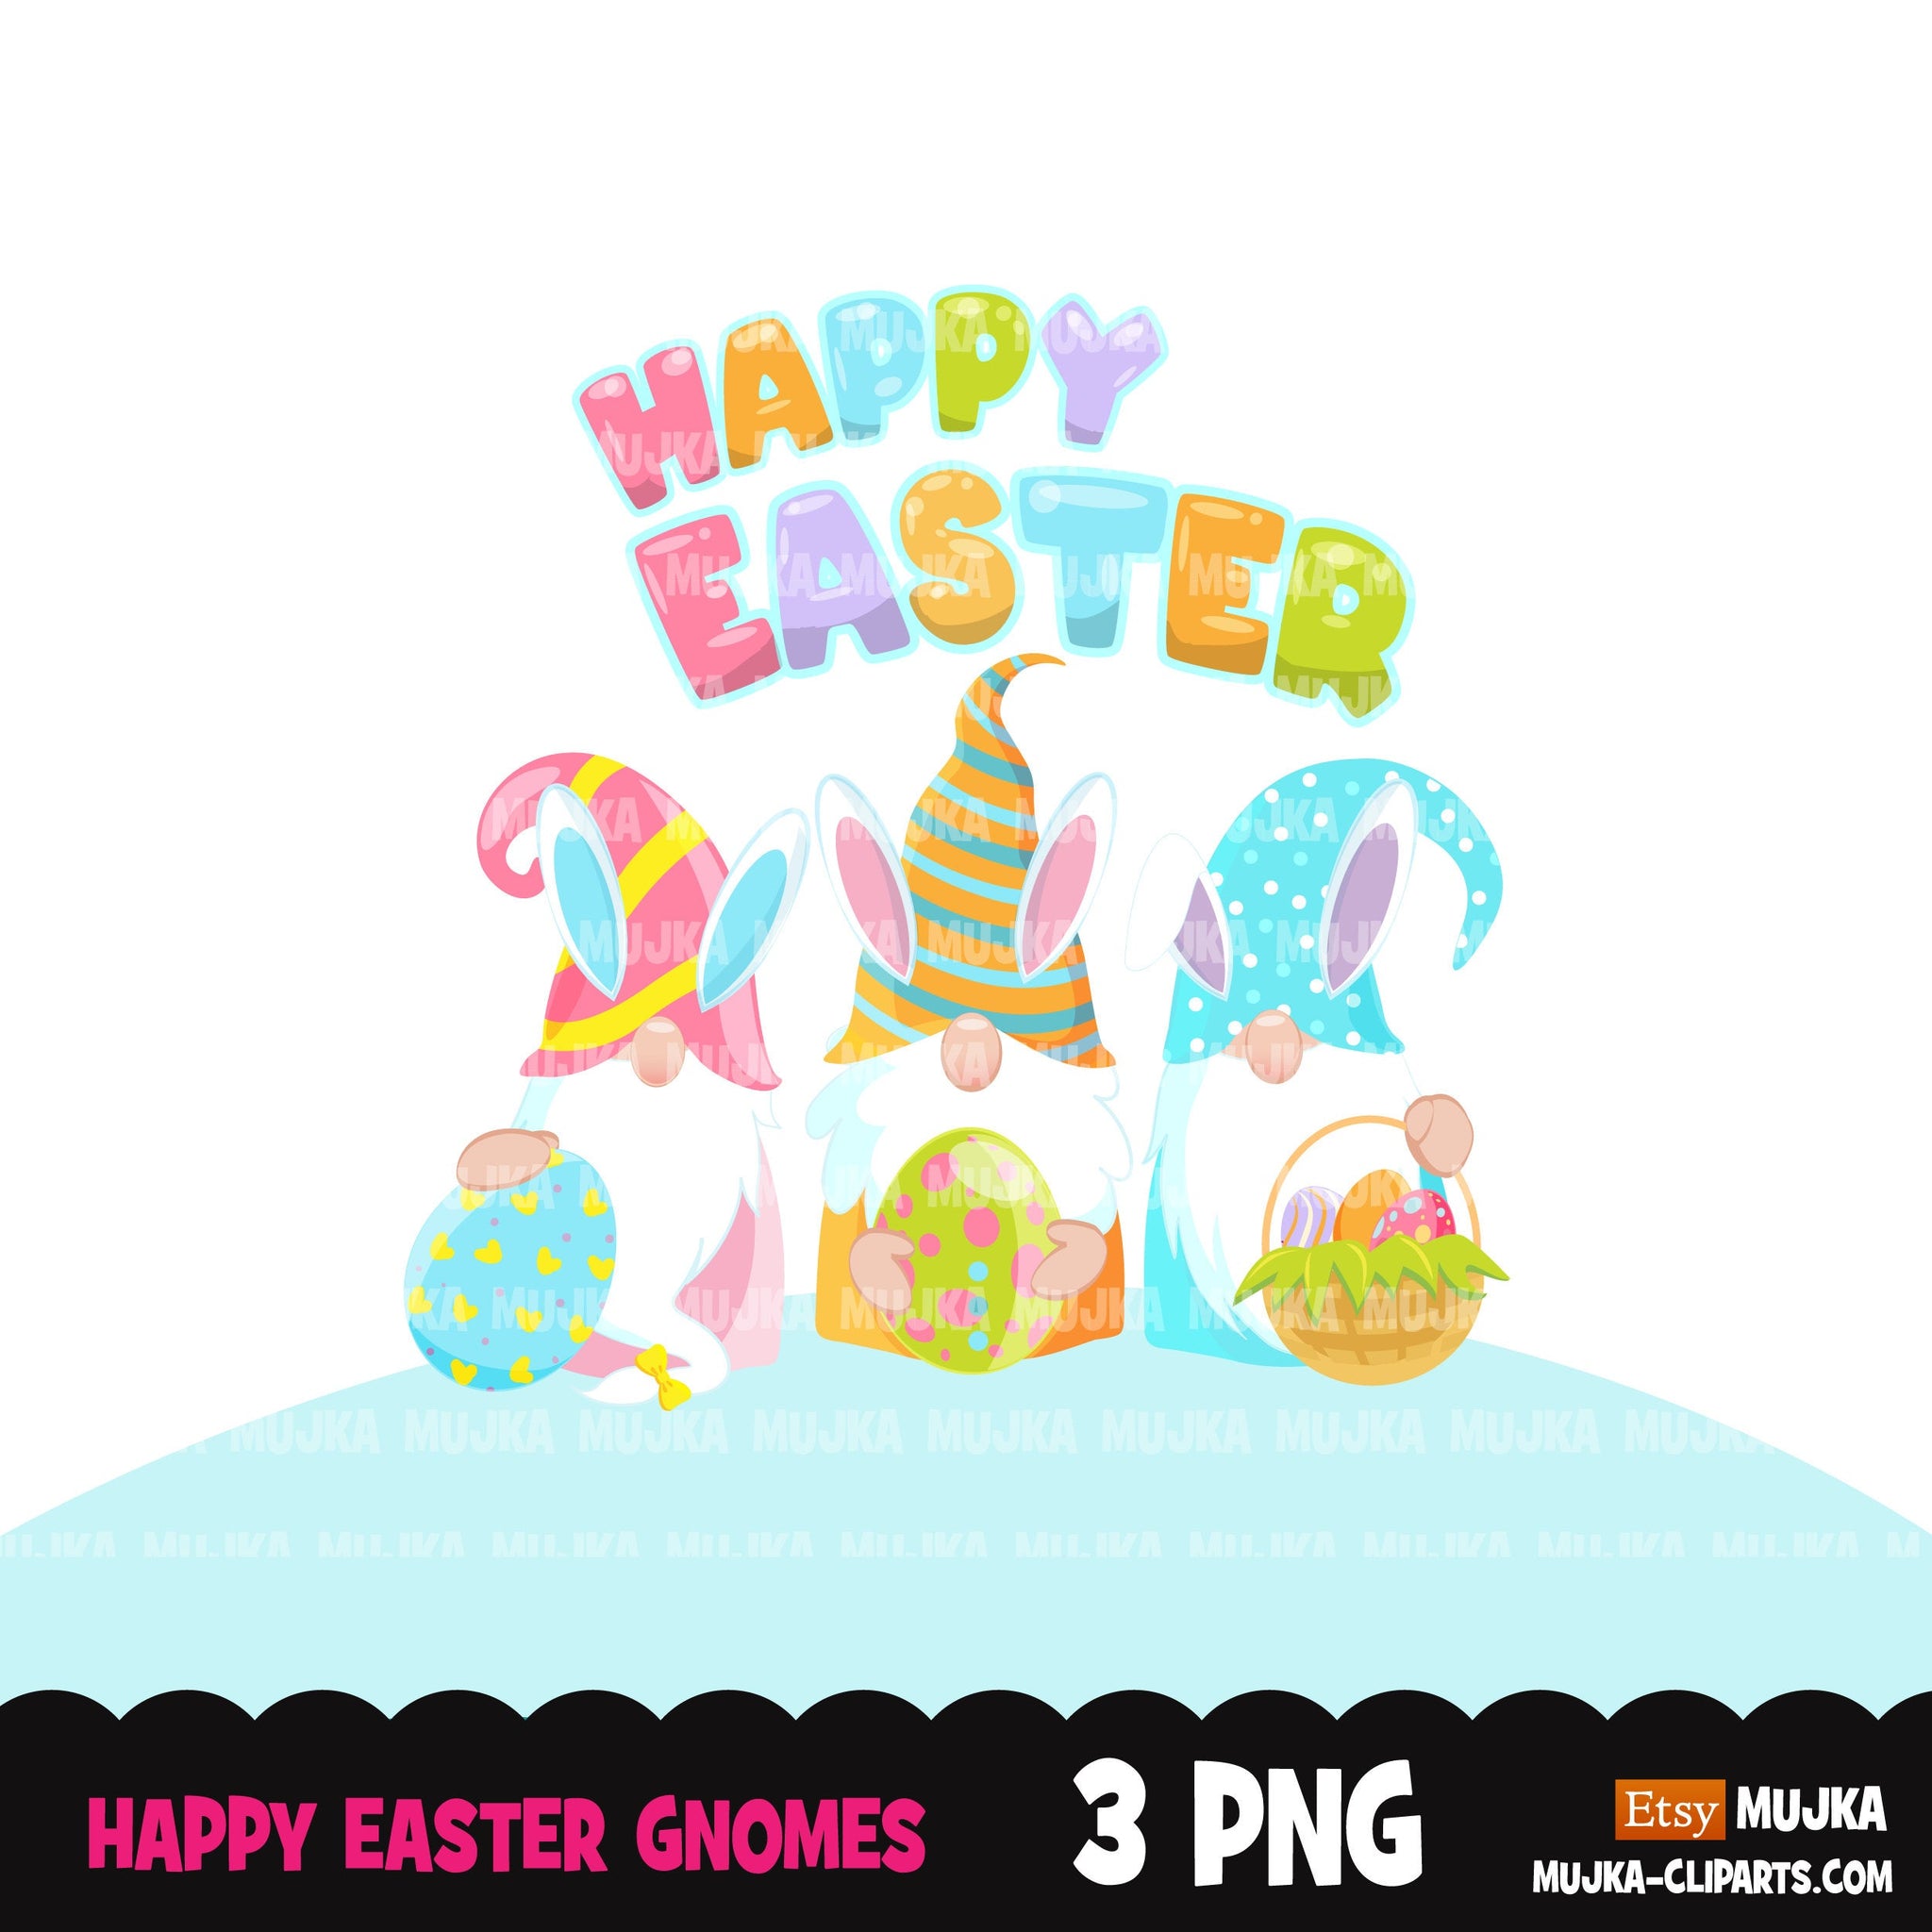 Diseños de sublimación de gnomos de Pascua descarga digital, imágenes prediseñadas de gnomos, diseño de camisa de Pascua, huevo de Pascua, archivos digitales PNG para cricut